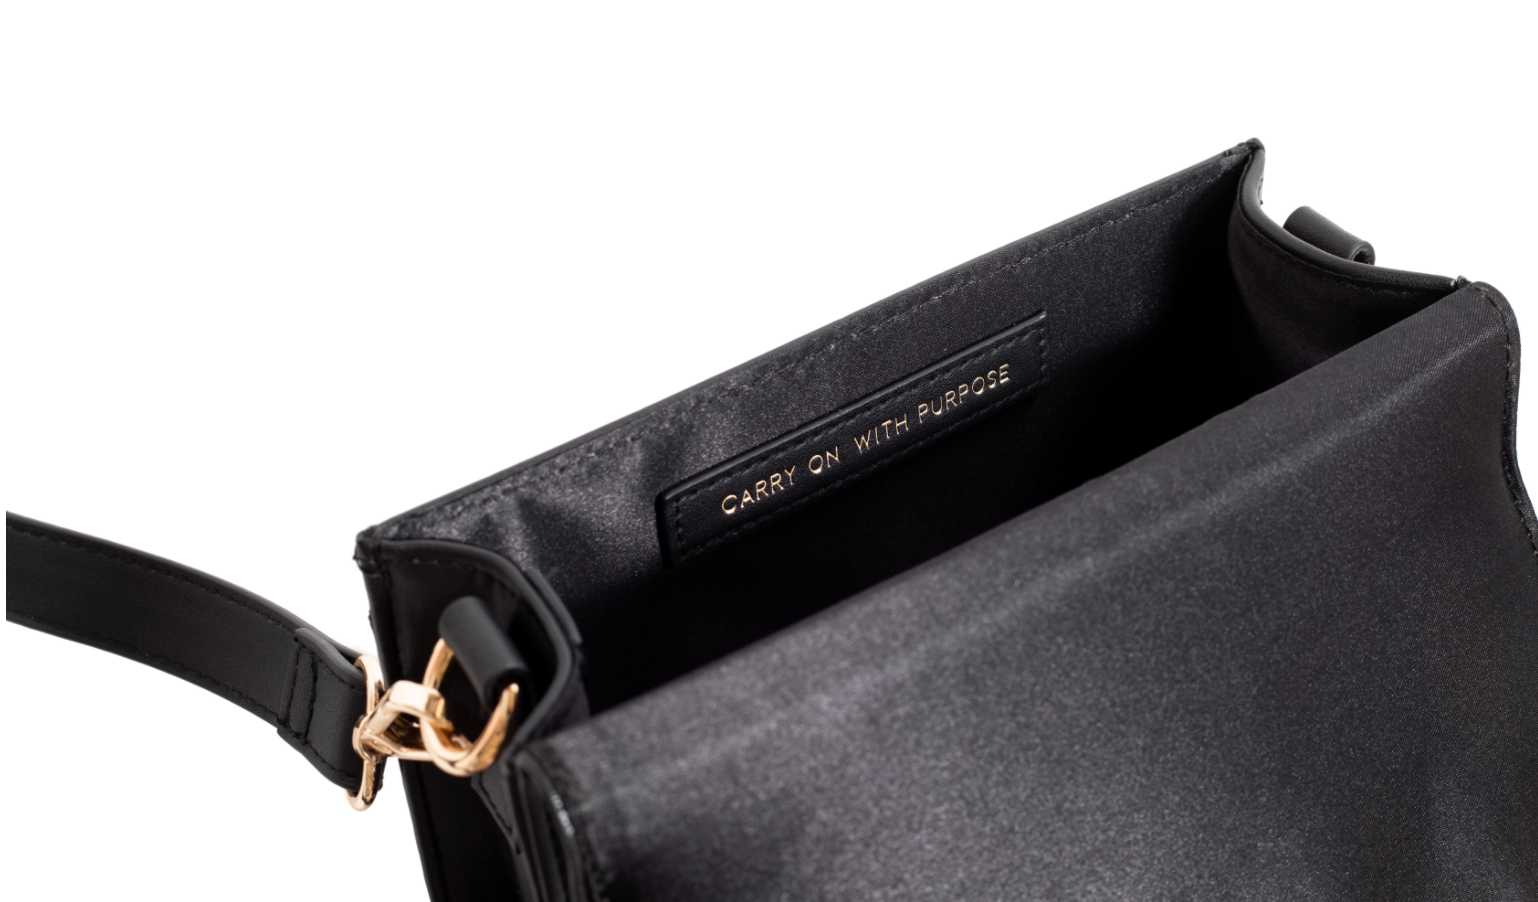 The EMBLEM Convertible Belt Bag